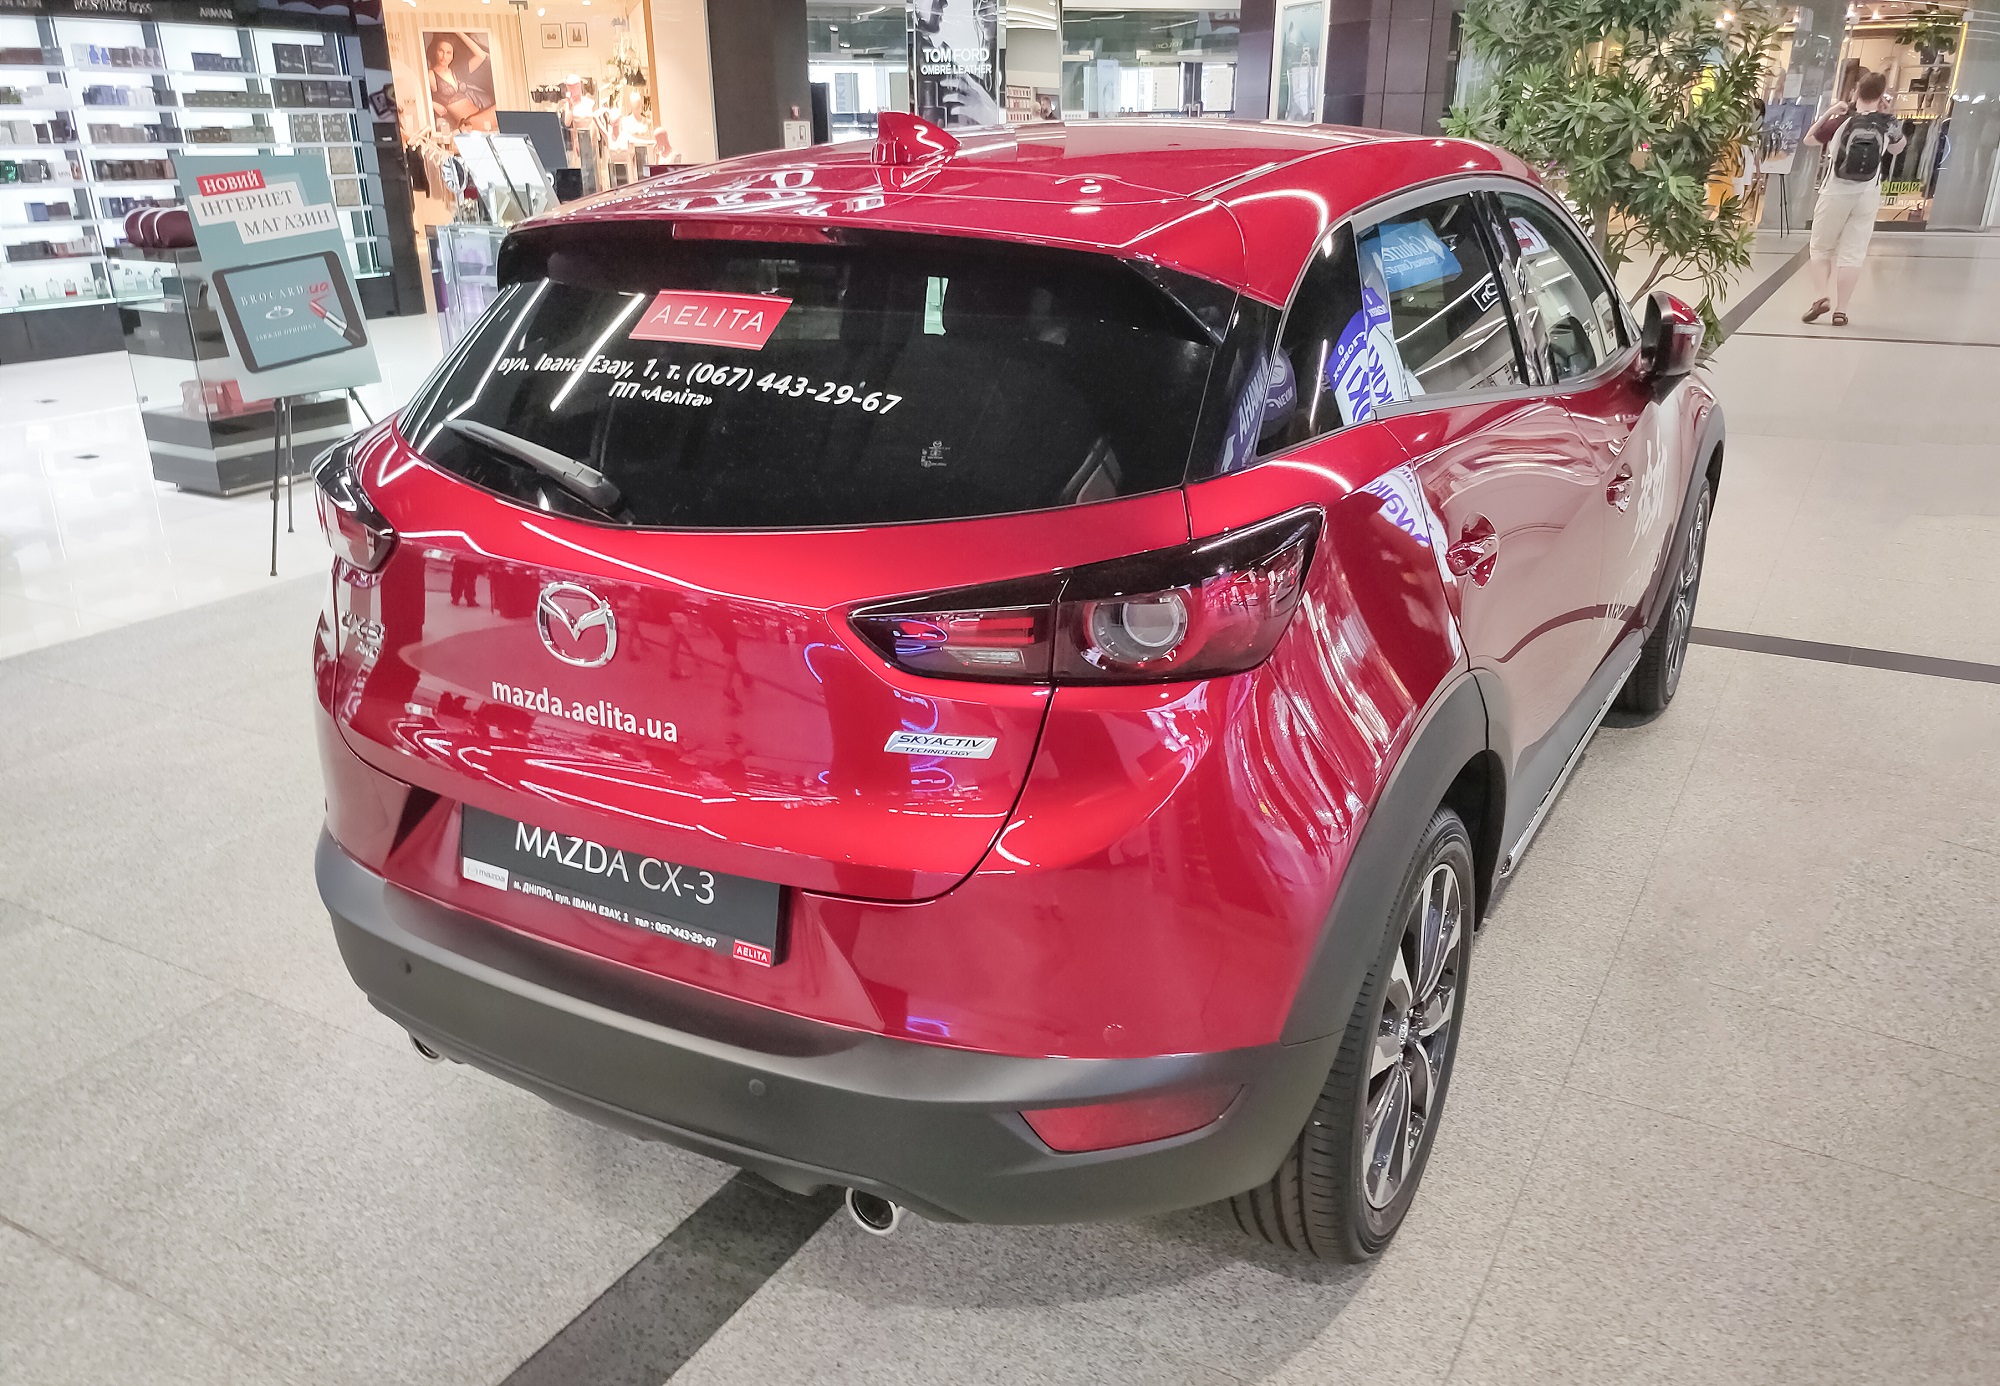 Produkty Mazda - opis akcesoriów Mazda